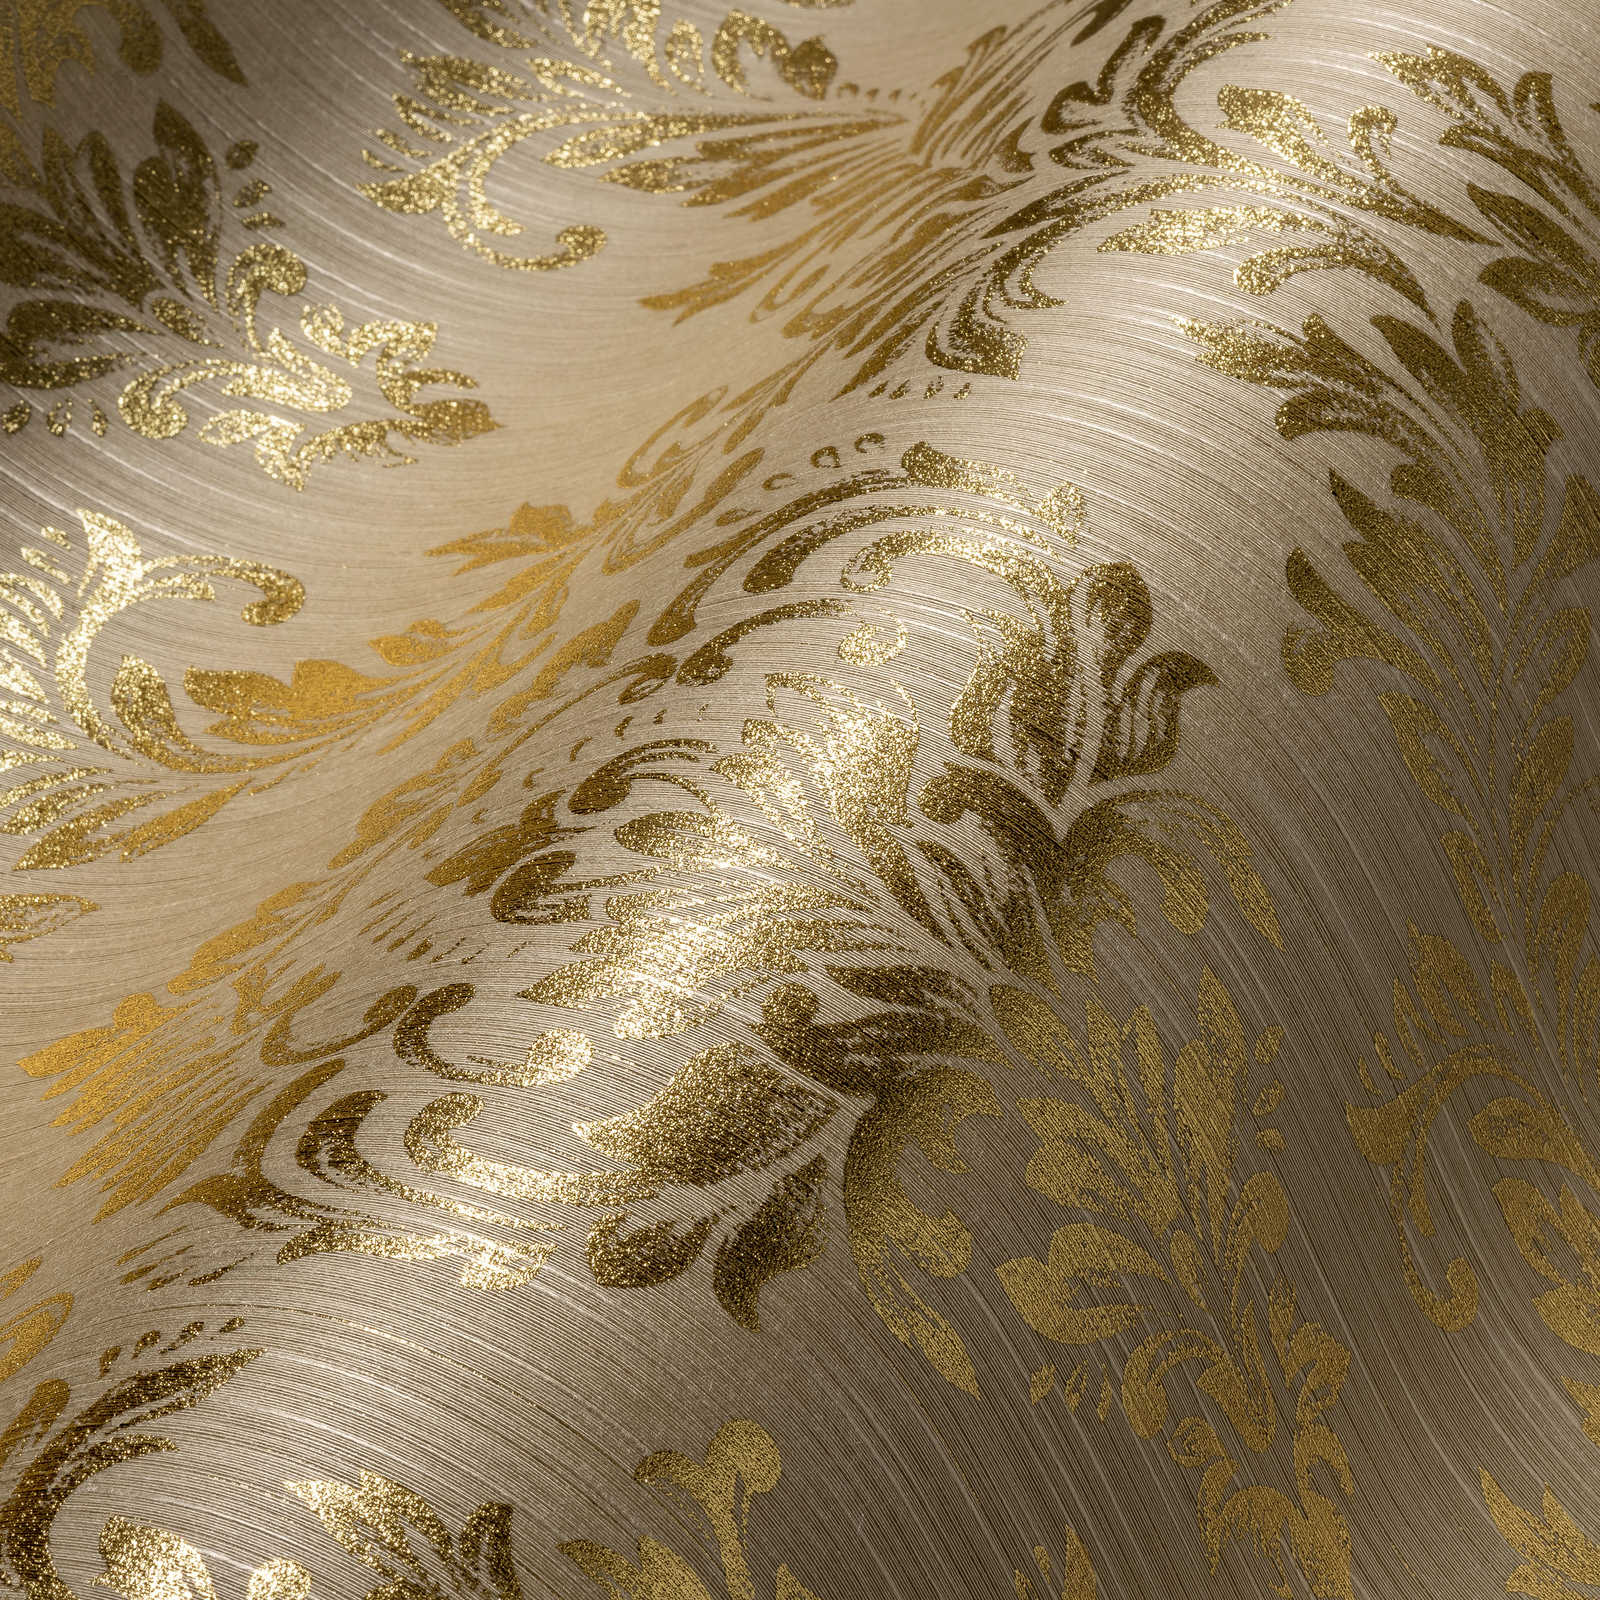             Ornamenteel behang met gouden glittereffect - goud, beige
        